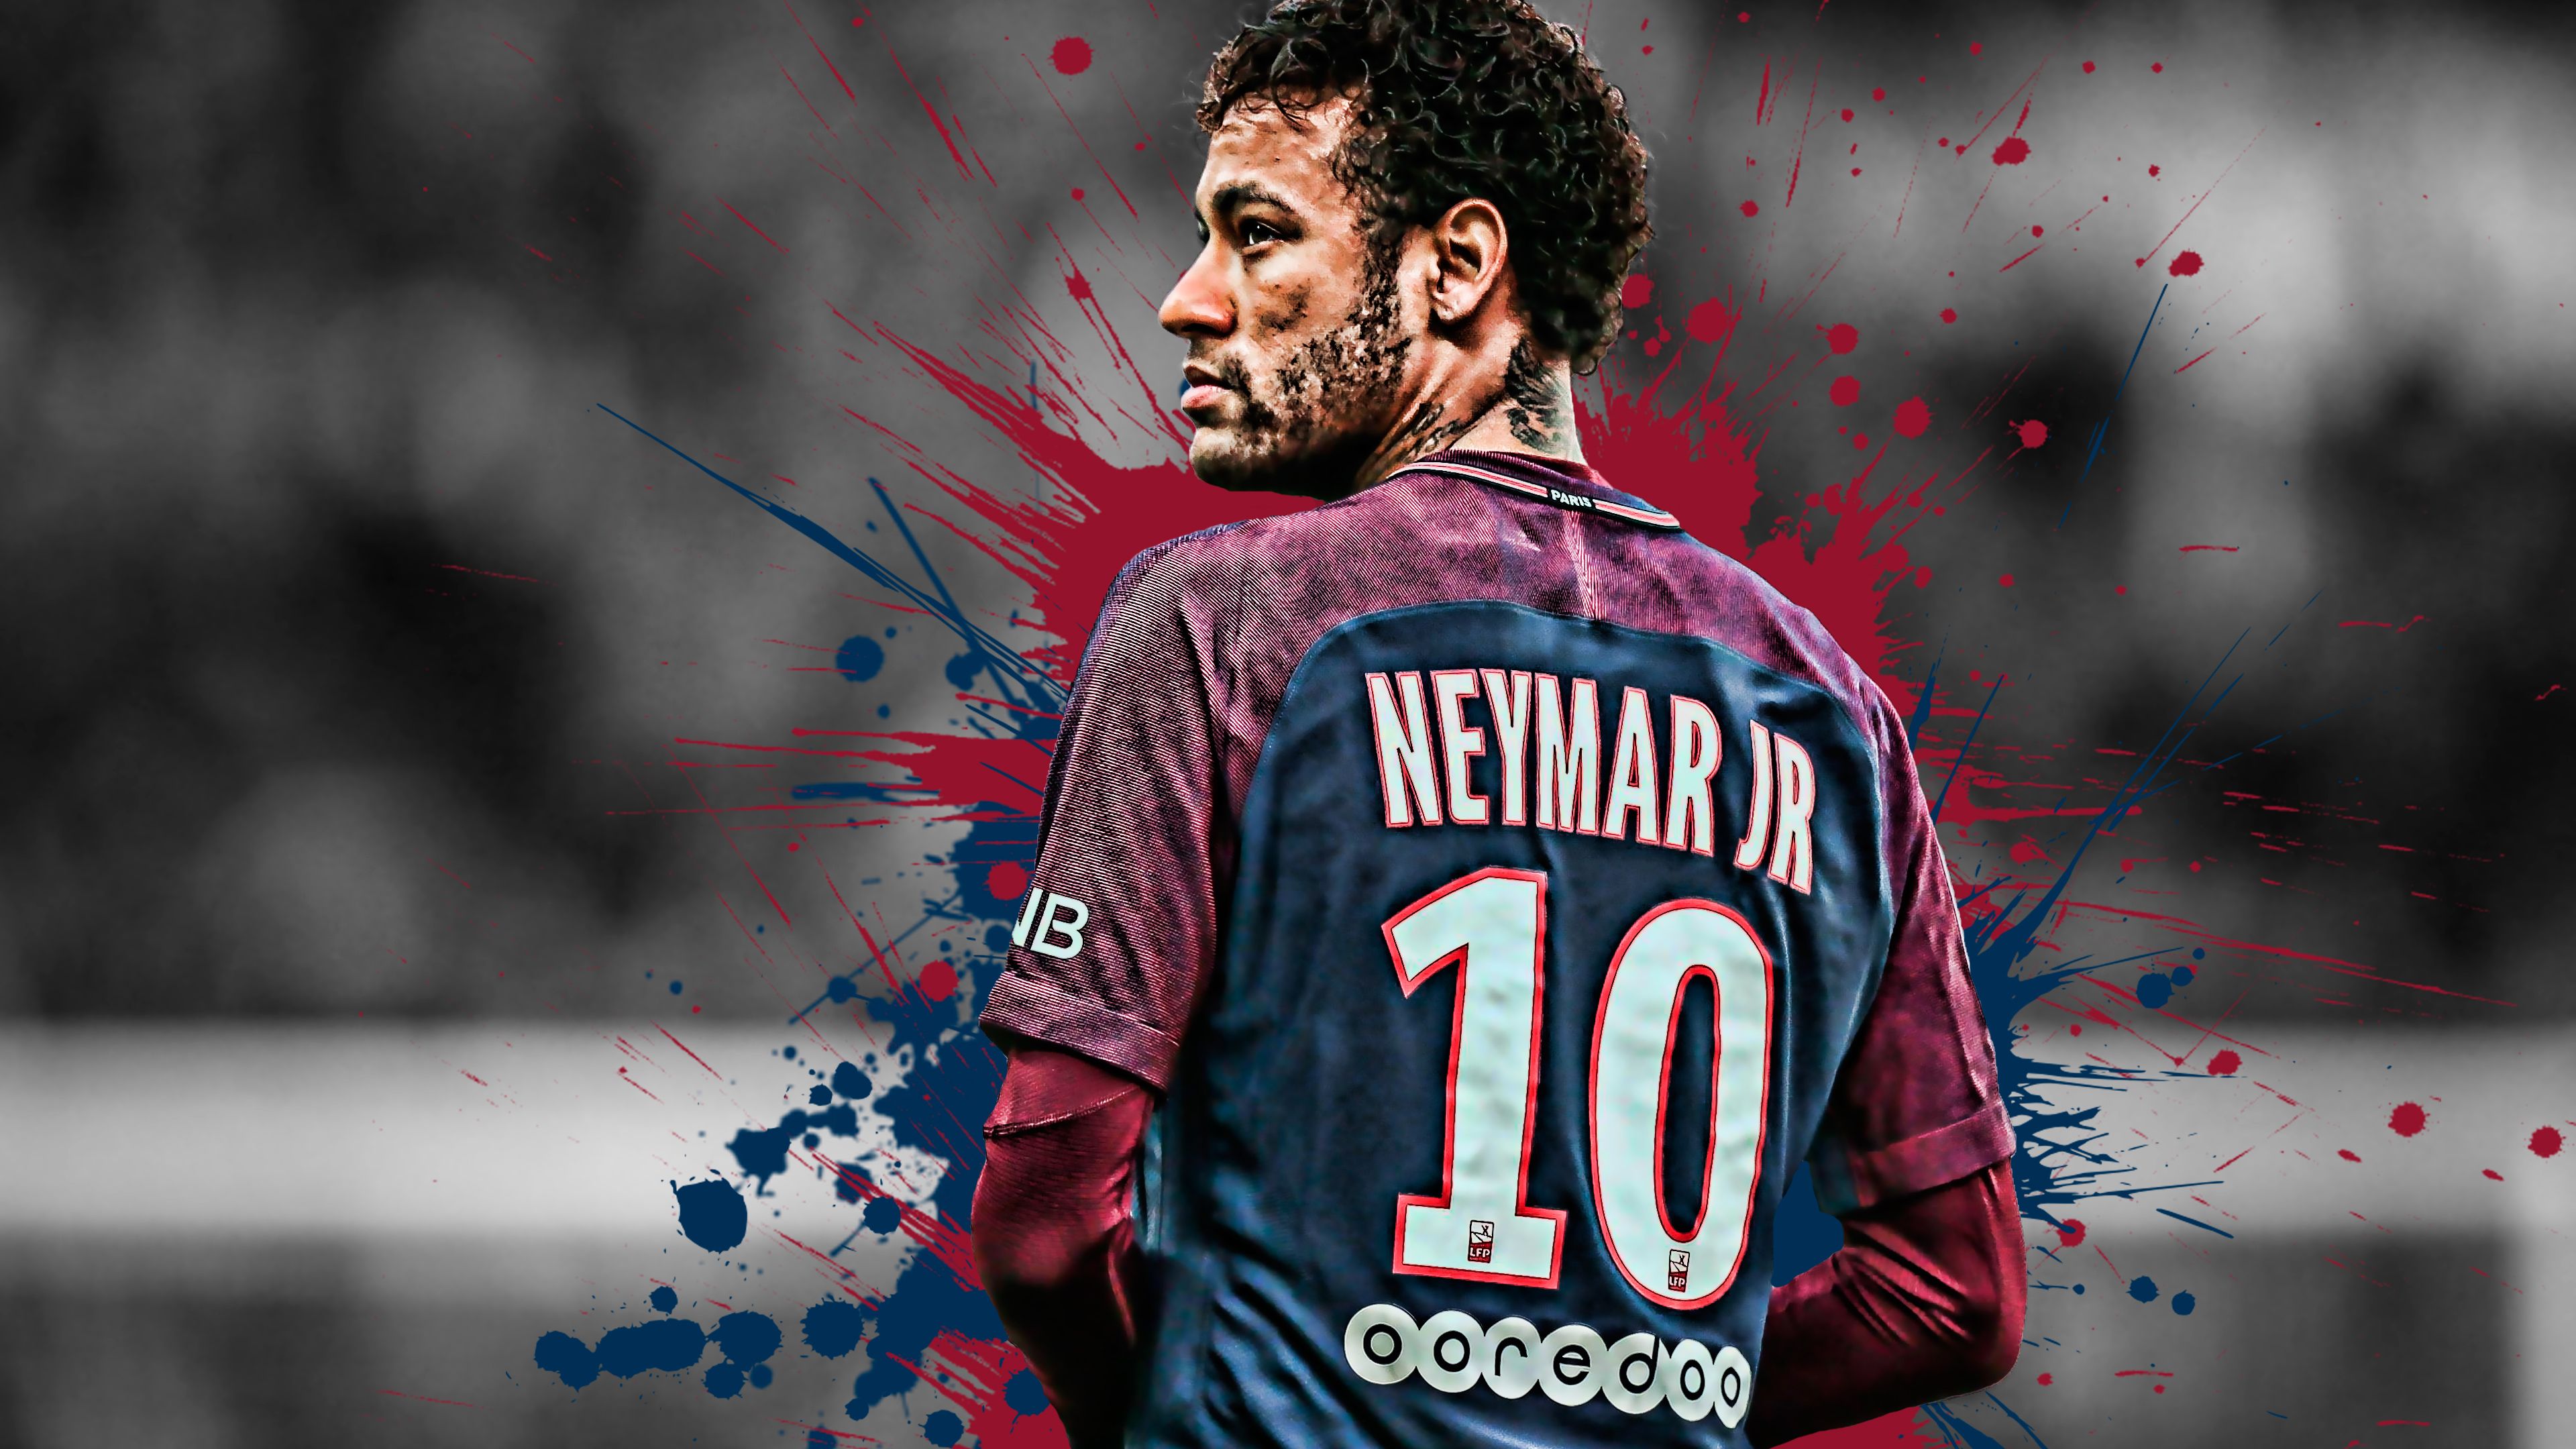 Neymar Brazilian Football Player 4K Wallpaper. HD Wallpaper